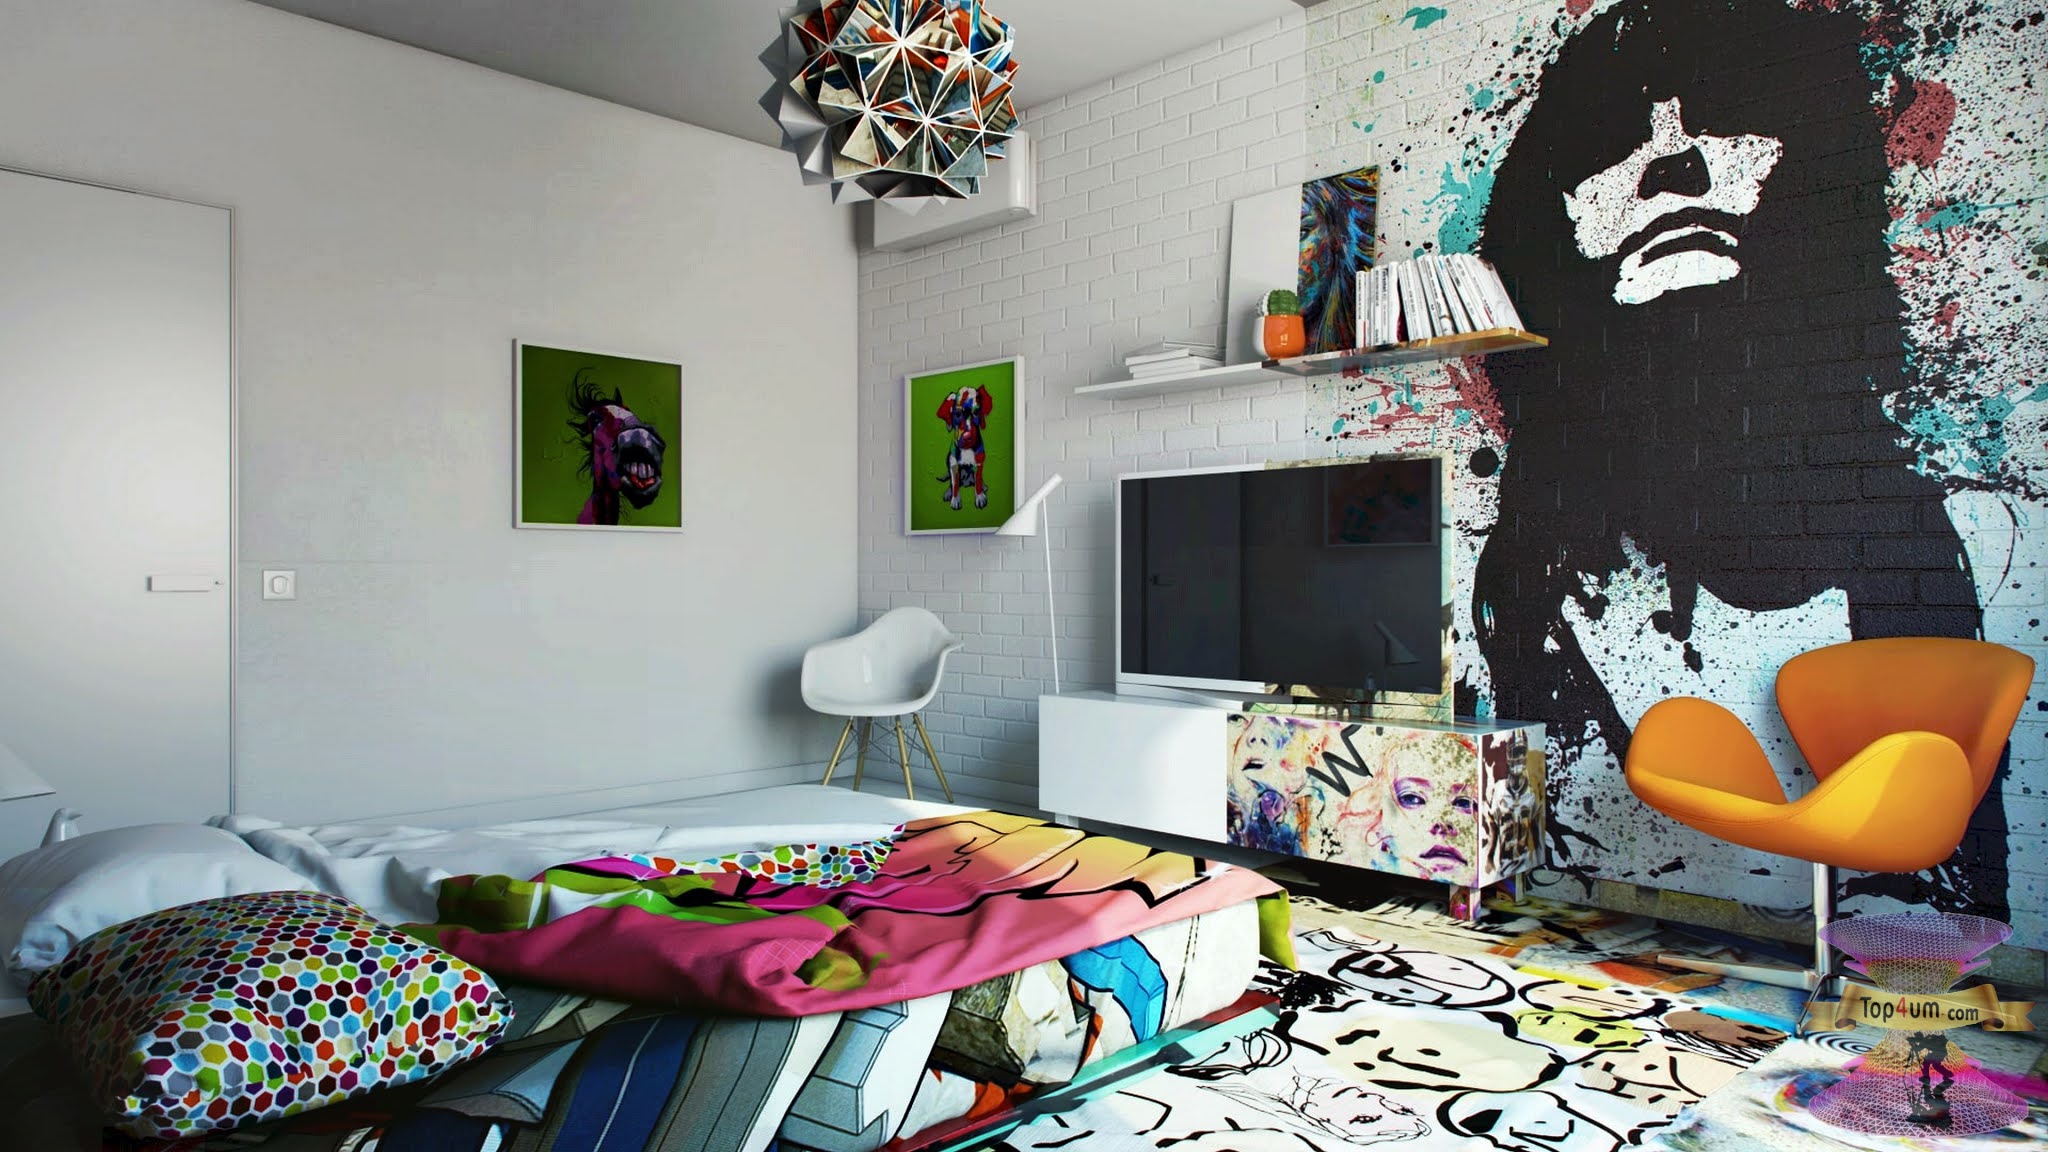 Bedroom pop. Комнаты из пинтереста в стиле инди КИД. Комната инди КИД 2021. Декор для комнаты подростка. Креативный интерьер.